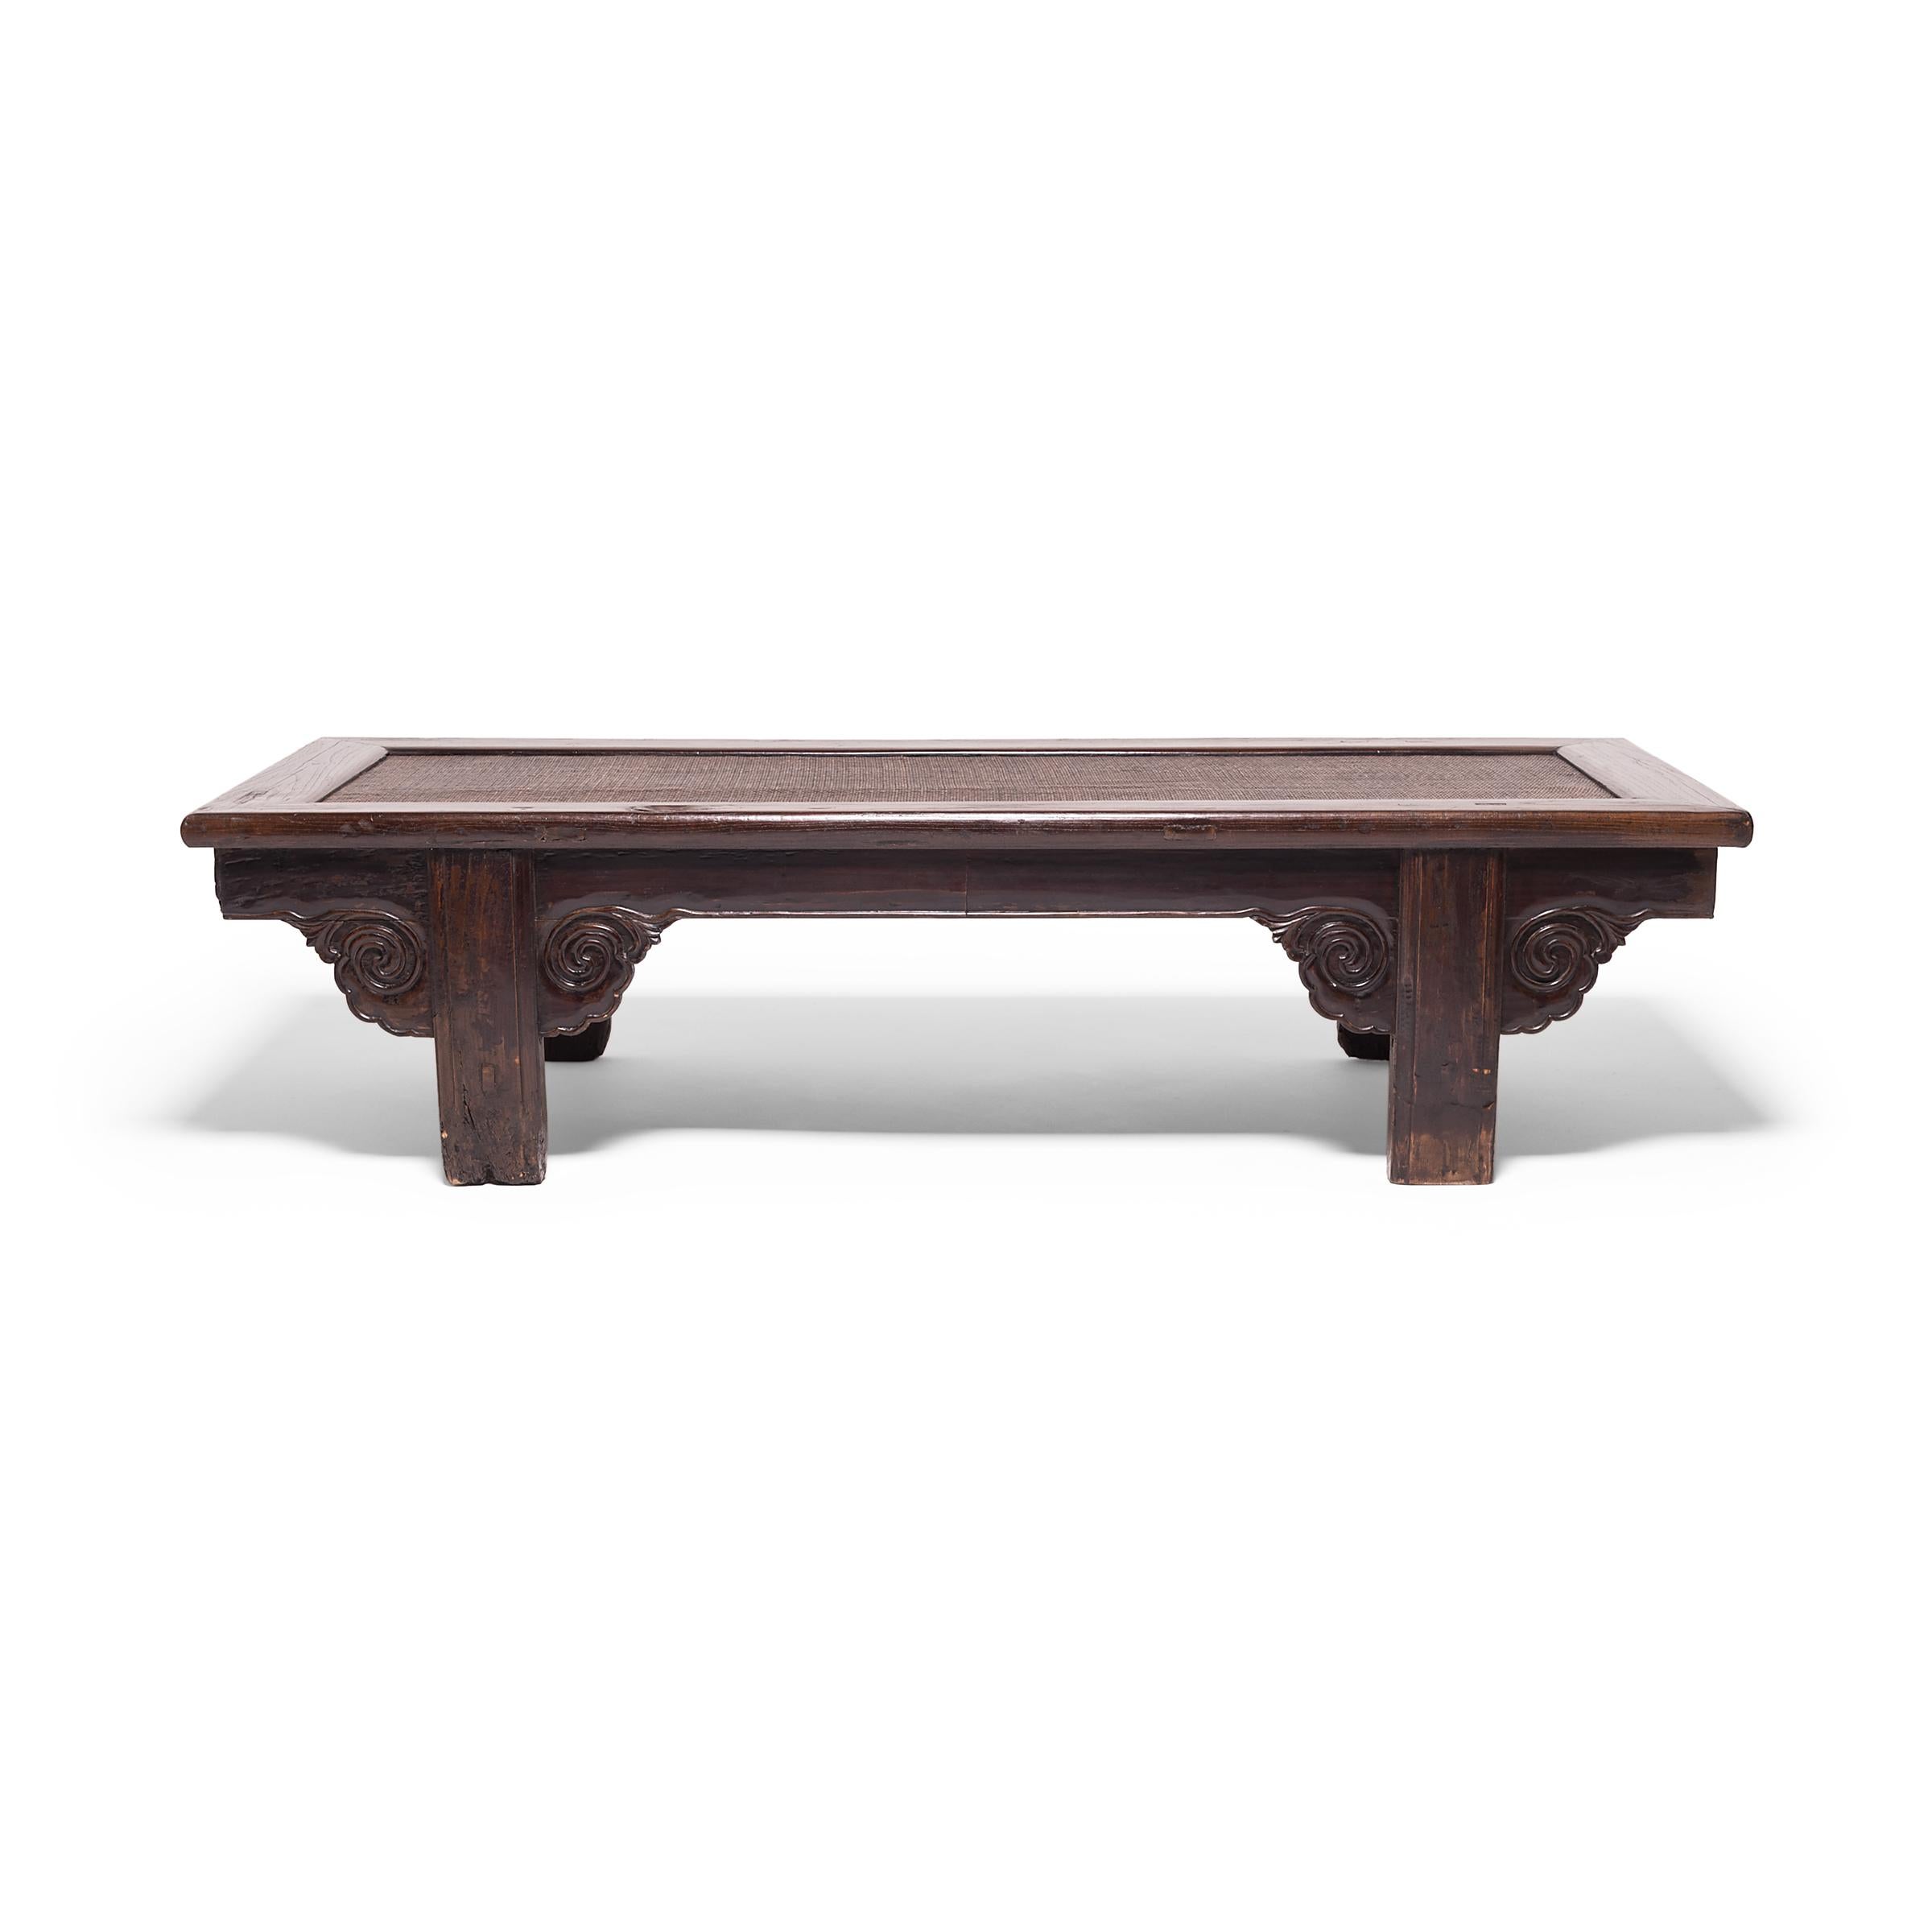 Cette belle table est un excellent exemple de l'artisanat traditionnel chinois. Le cadre du plateau magnifiquement usé est doublé d'un passe-partout finement tissé, des nuages sculptés forment des écoinçons sur le tablier, et l'assemblage à tenon et